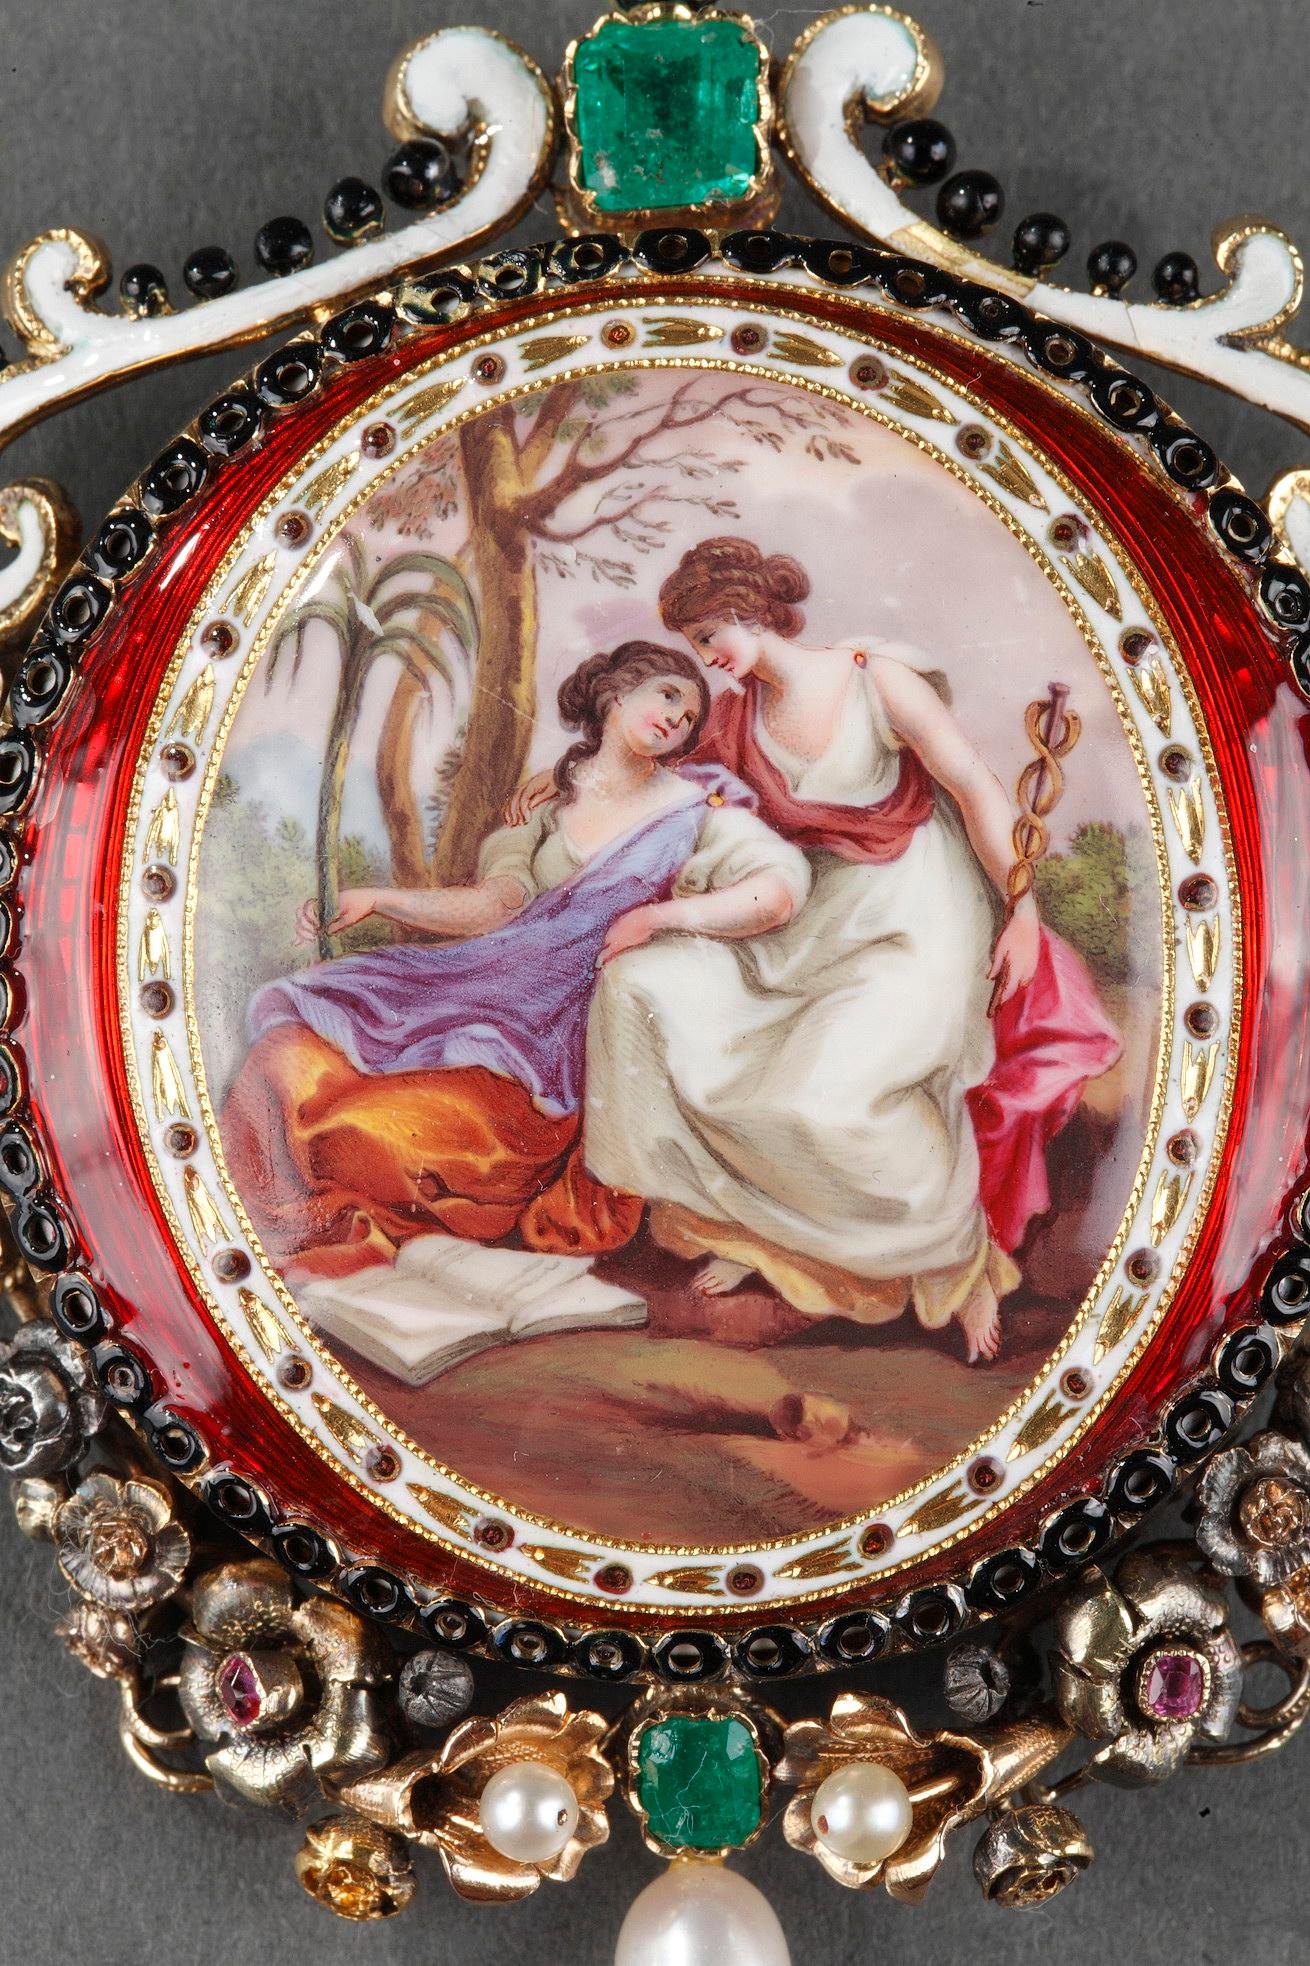 Ovale Goldbrosche mit einem Medaillon aus Emaille, das zwei weibliche Figuren in einer Landschaft zeigt.  Jede von ihnen trägt ein Attribut, das mit der Mythologie zusammenhängt.
Die durchbrochene Fassung mit floralem Motiv wird durch einen